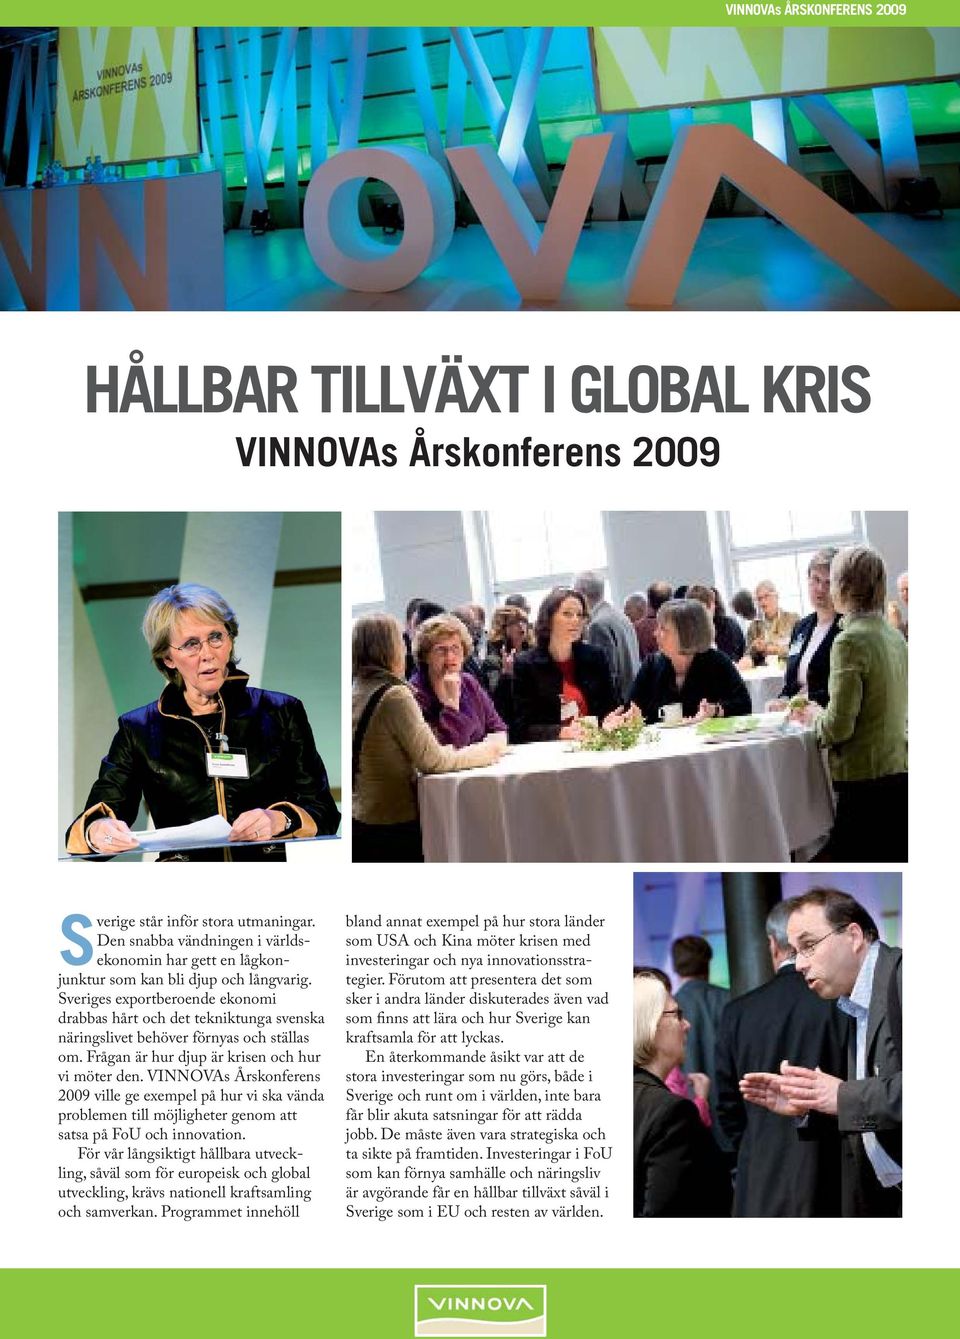 VINNOVAs Årskonferens 2009 ville ge exempel på hur vi ska vända problemen till möjligheter genom att satsa på FoU och innovation.